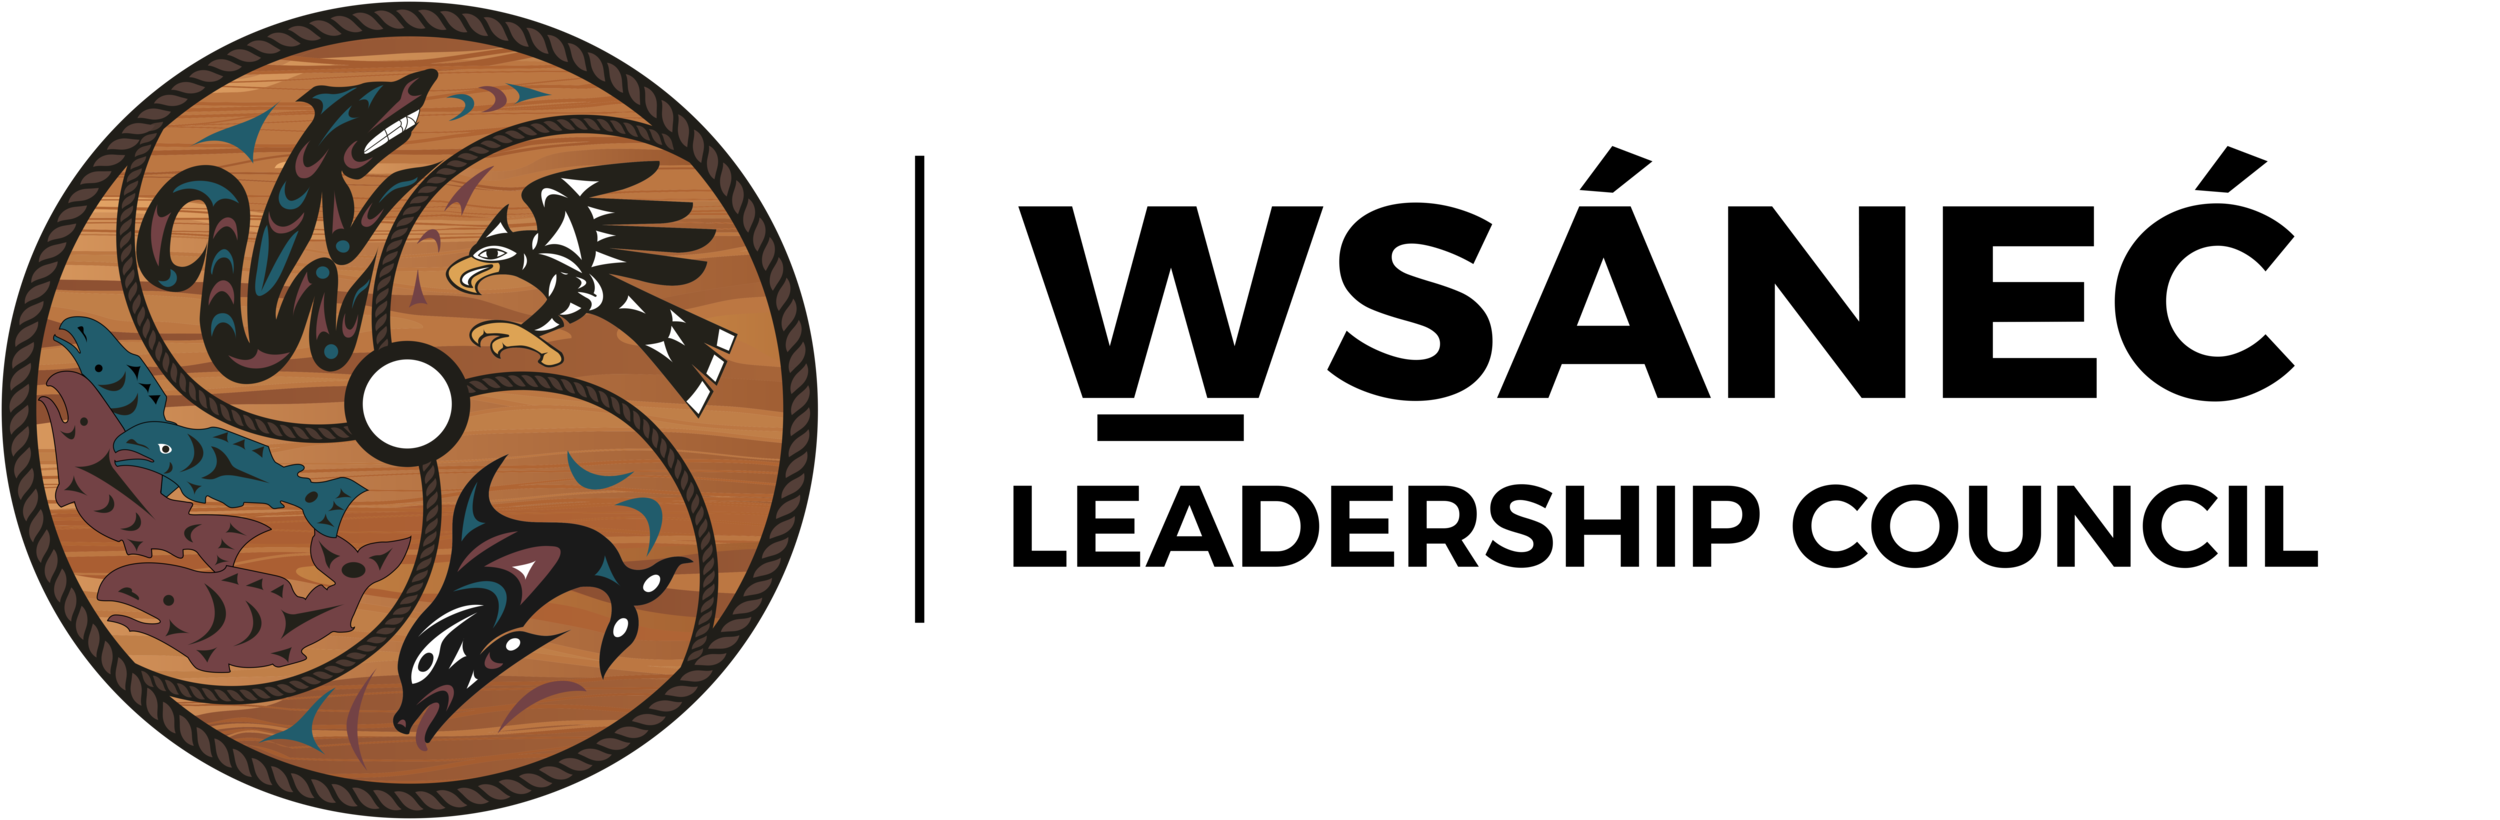 WLC-logo-final copy-1.png